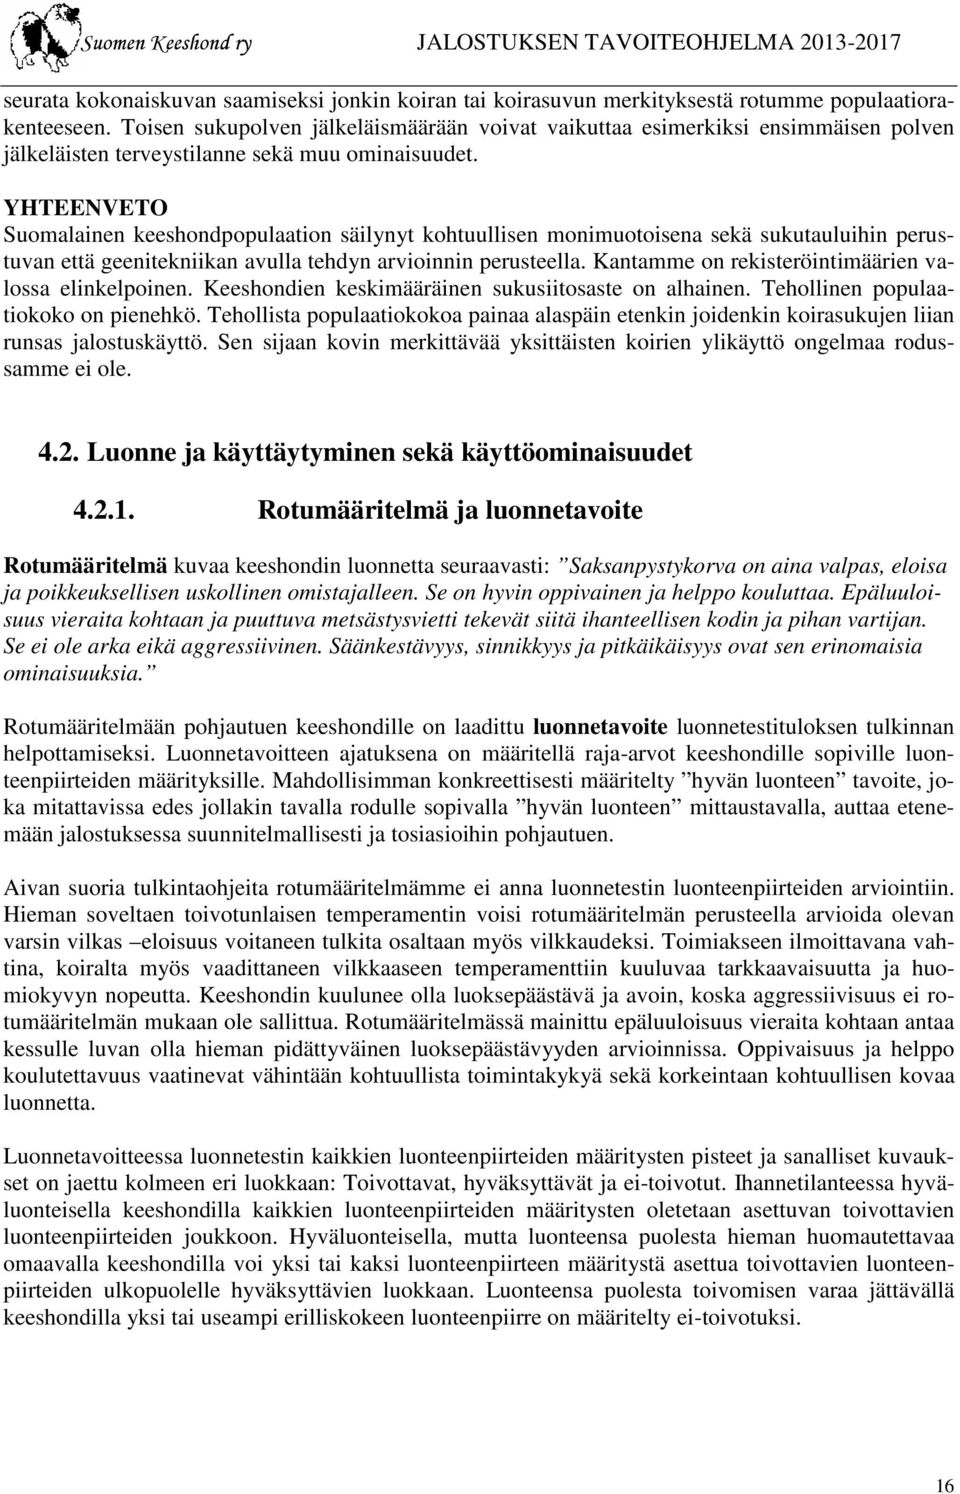 YHTEENVETO Suomalainen keeshondpopulaation säilynyt kohtuullisen monimuotoisena sekä sukutauluihin perustuvan että geenitekniikan avulla tehdyn arvioinnin perusteella.